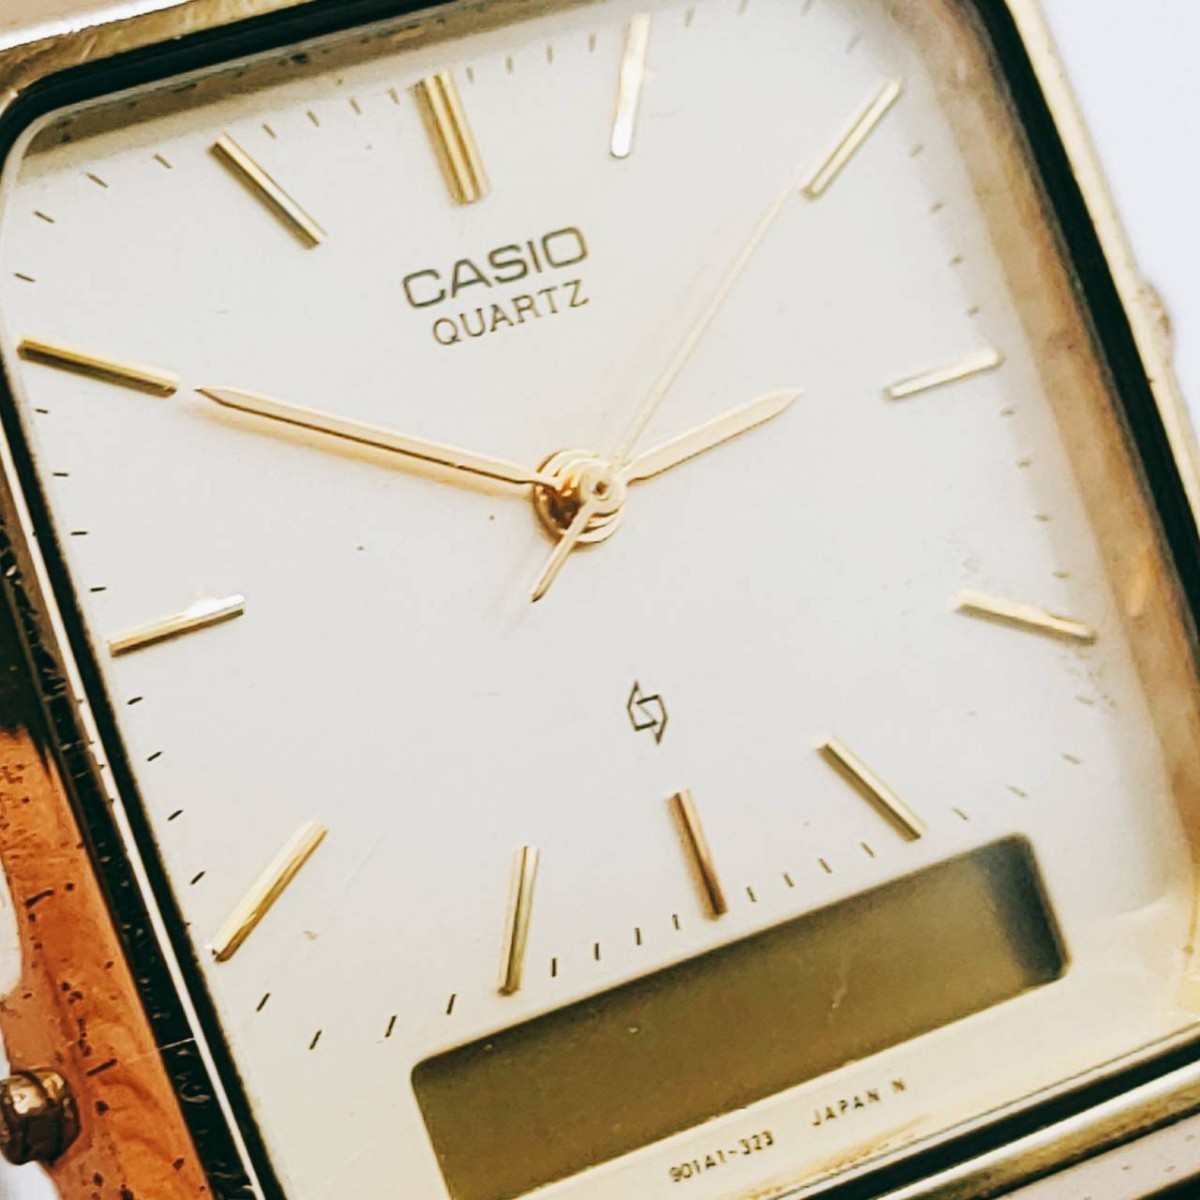 CASIO カシオ AQ-413G 腕時計 アナログ 3針 金色文字盤 ゴールド基調 時計 とけい トケイ アクセサリー ヴィンテージ アンティーク レトロ_画像3